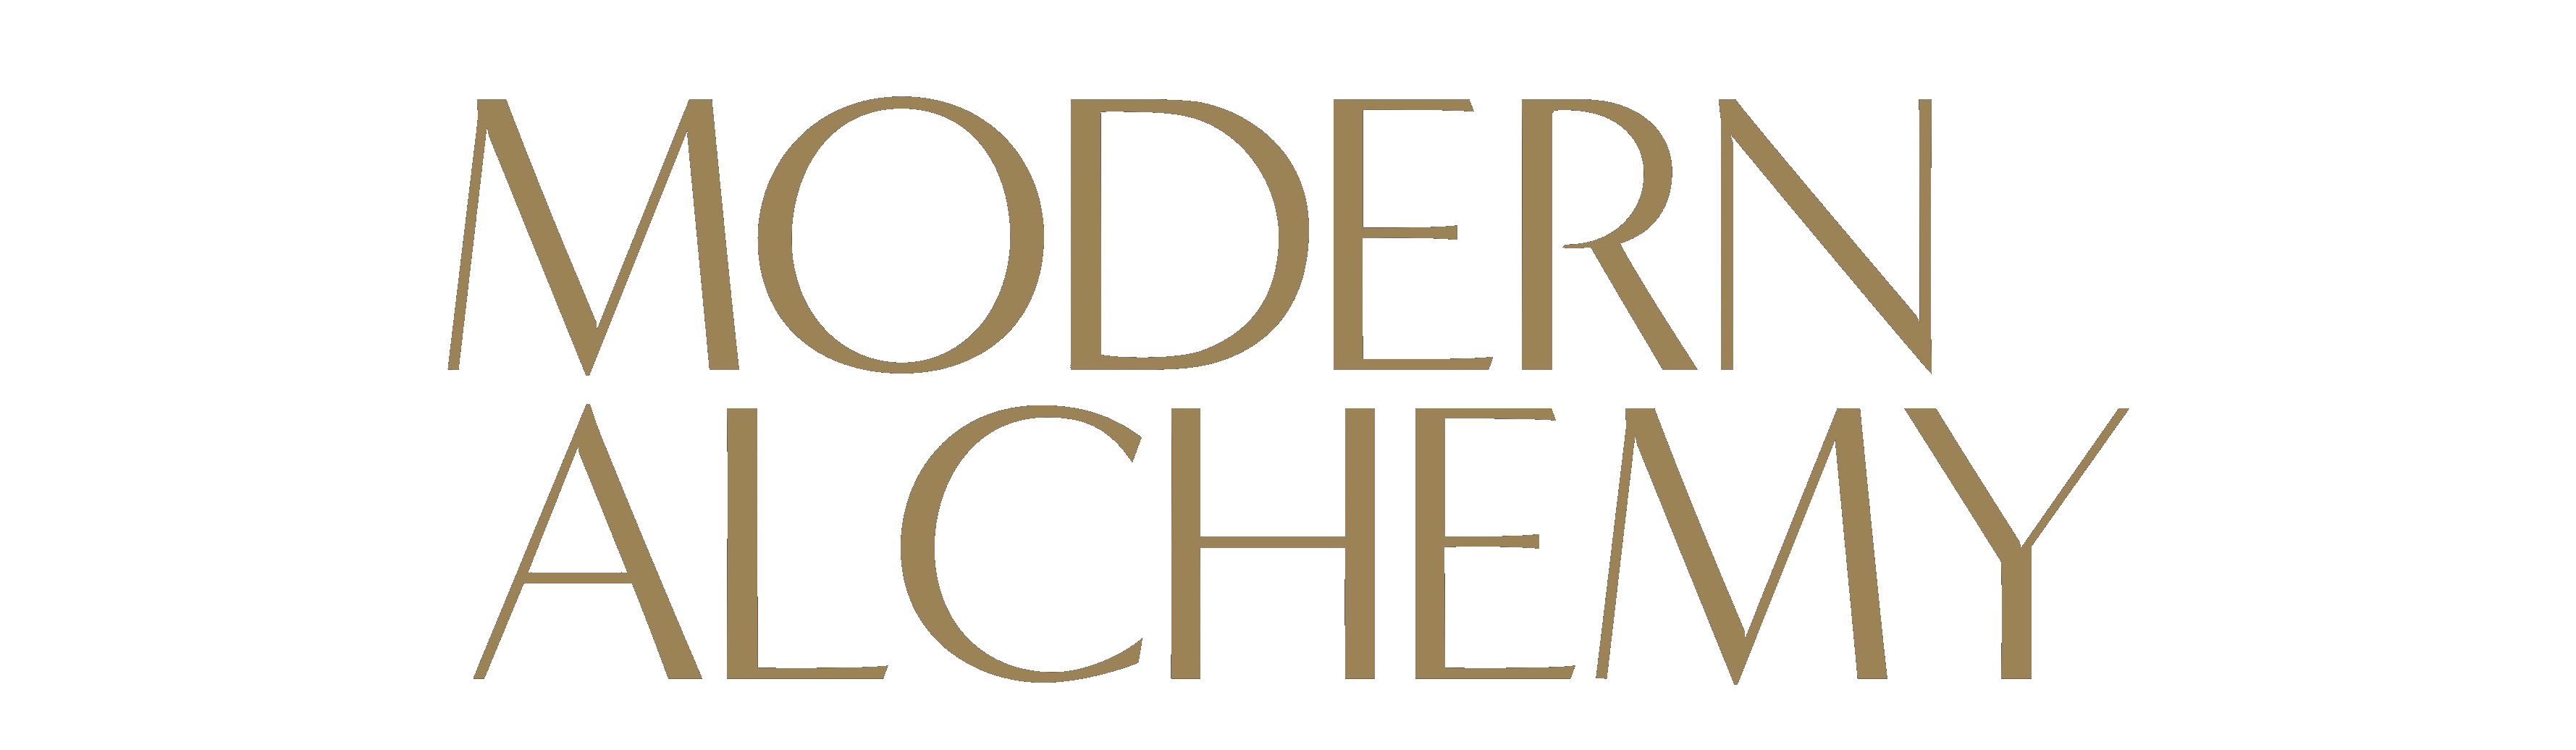 Modern Alchemy Jewelry Exhibition